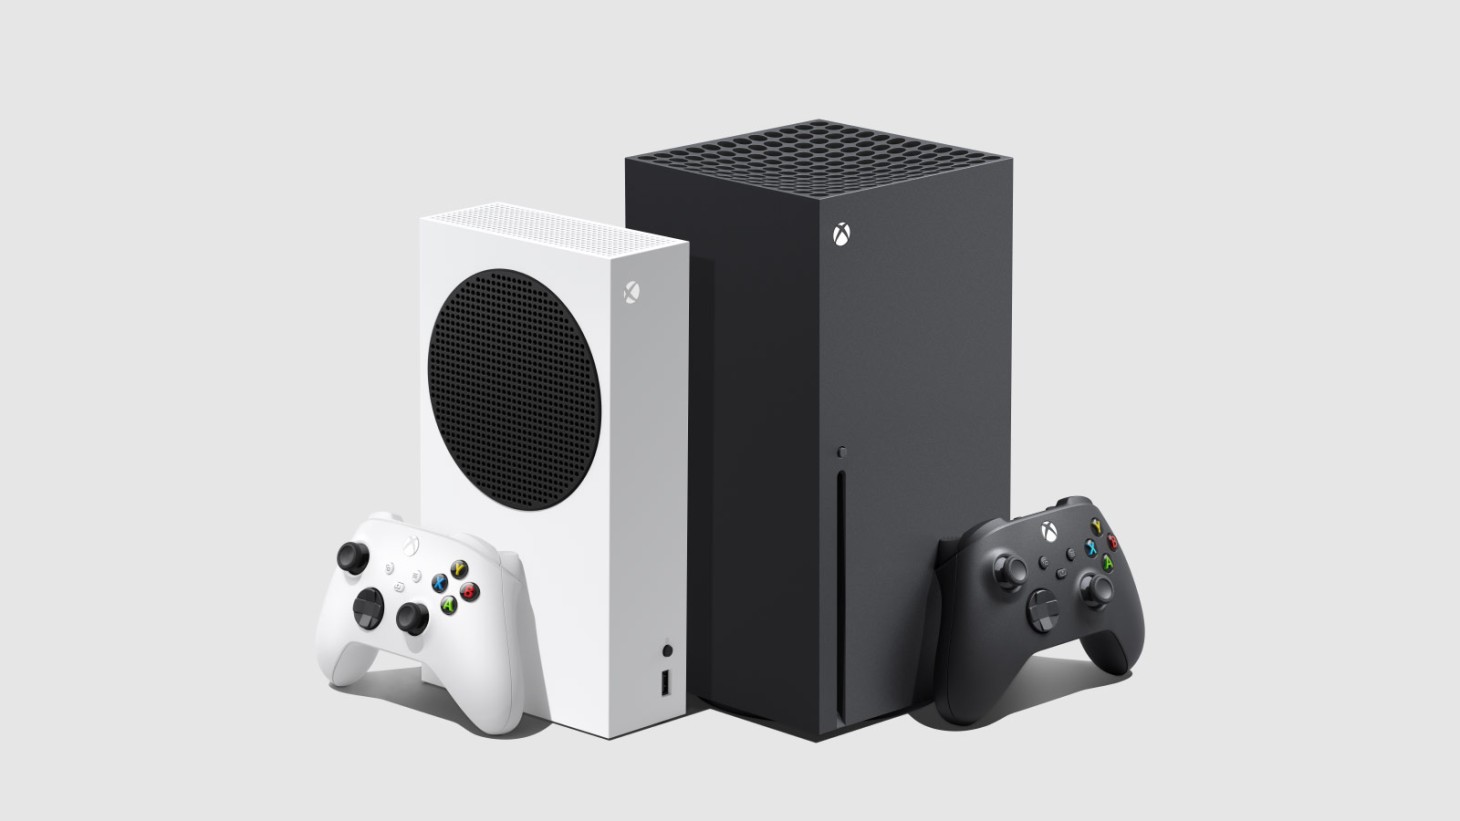 Phil Spencer sagt seinen Mitarbeitern angeblich, dass es keine Pläne gibt, die Produktion von Xbox-Konsolen einzustellen